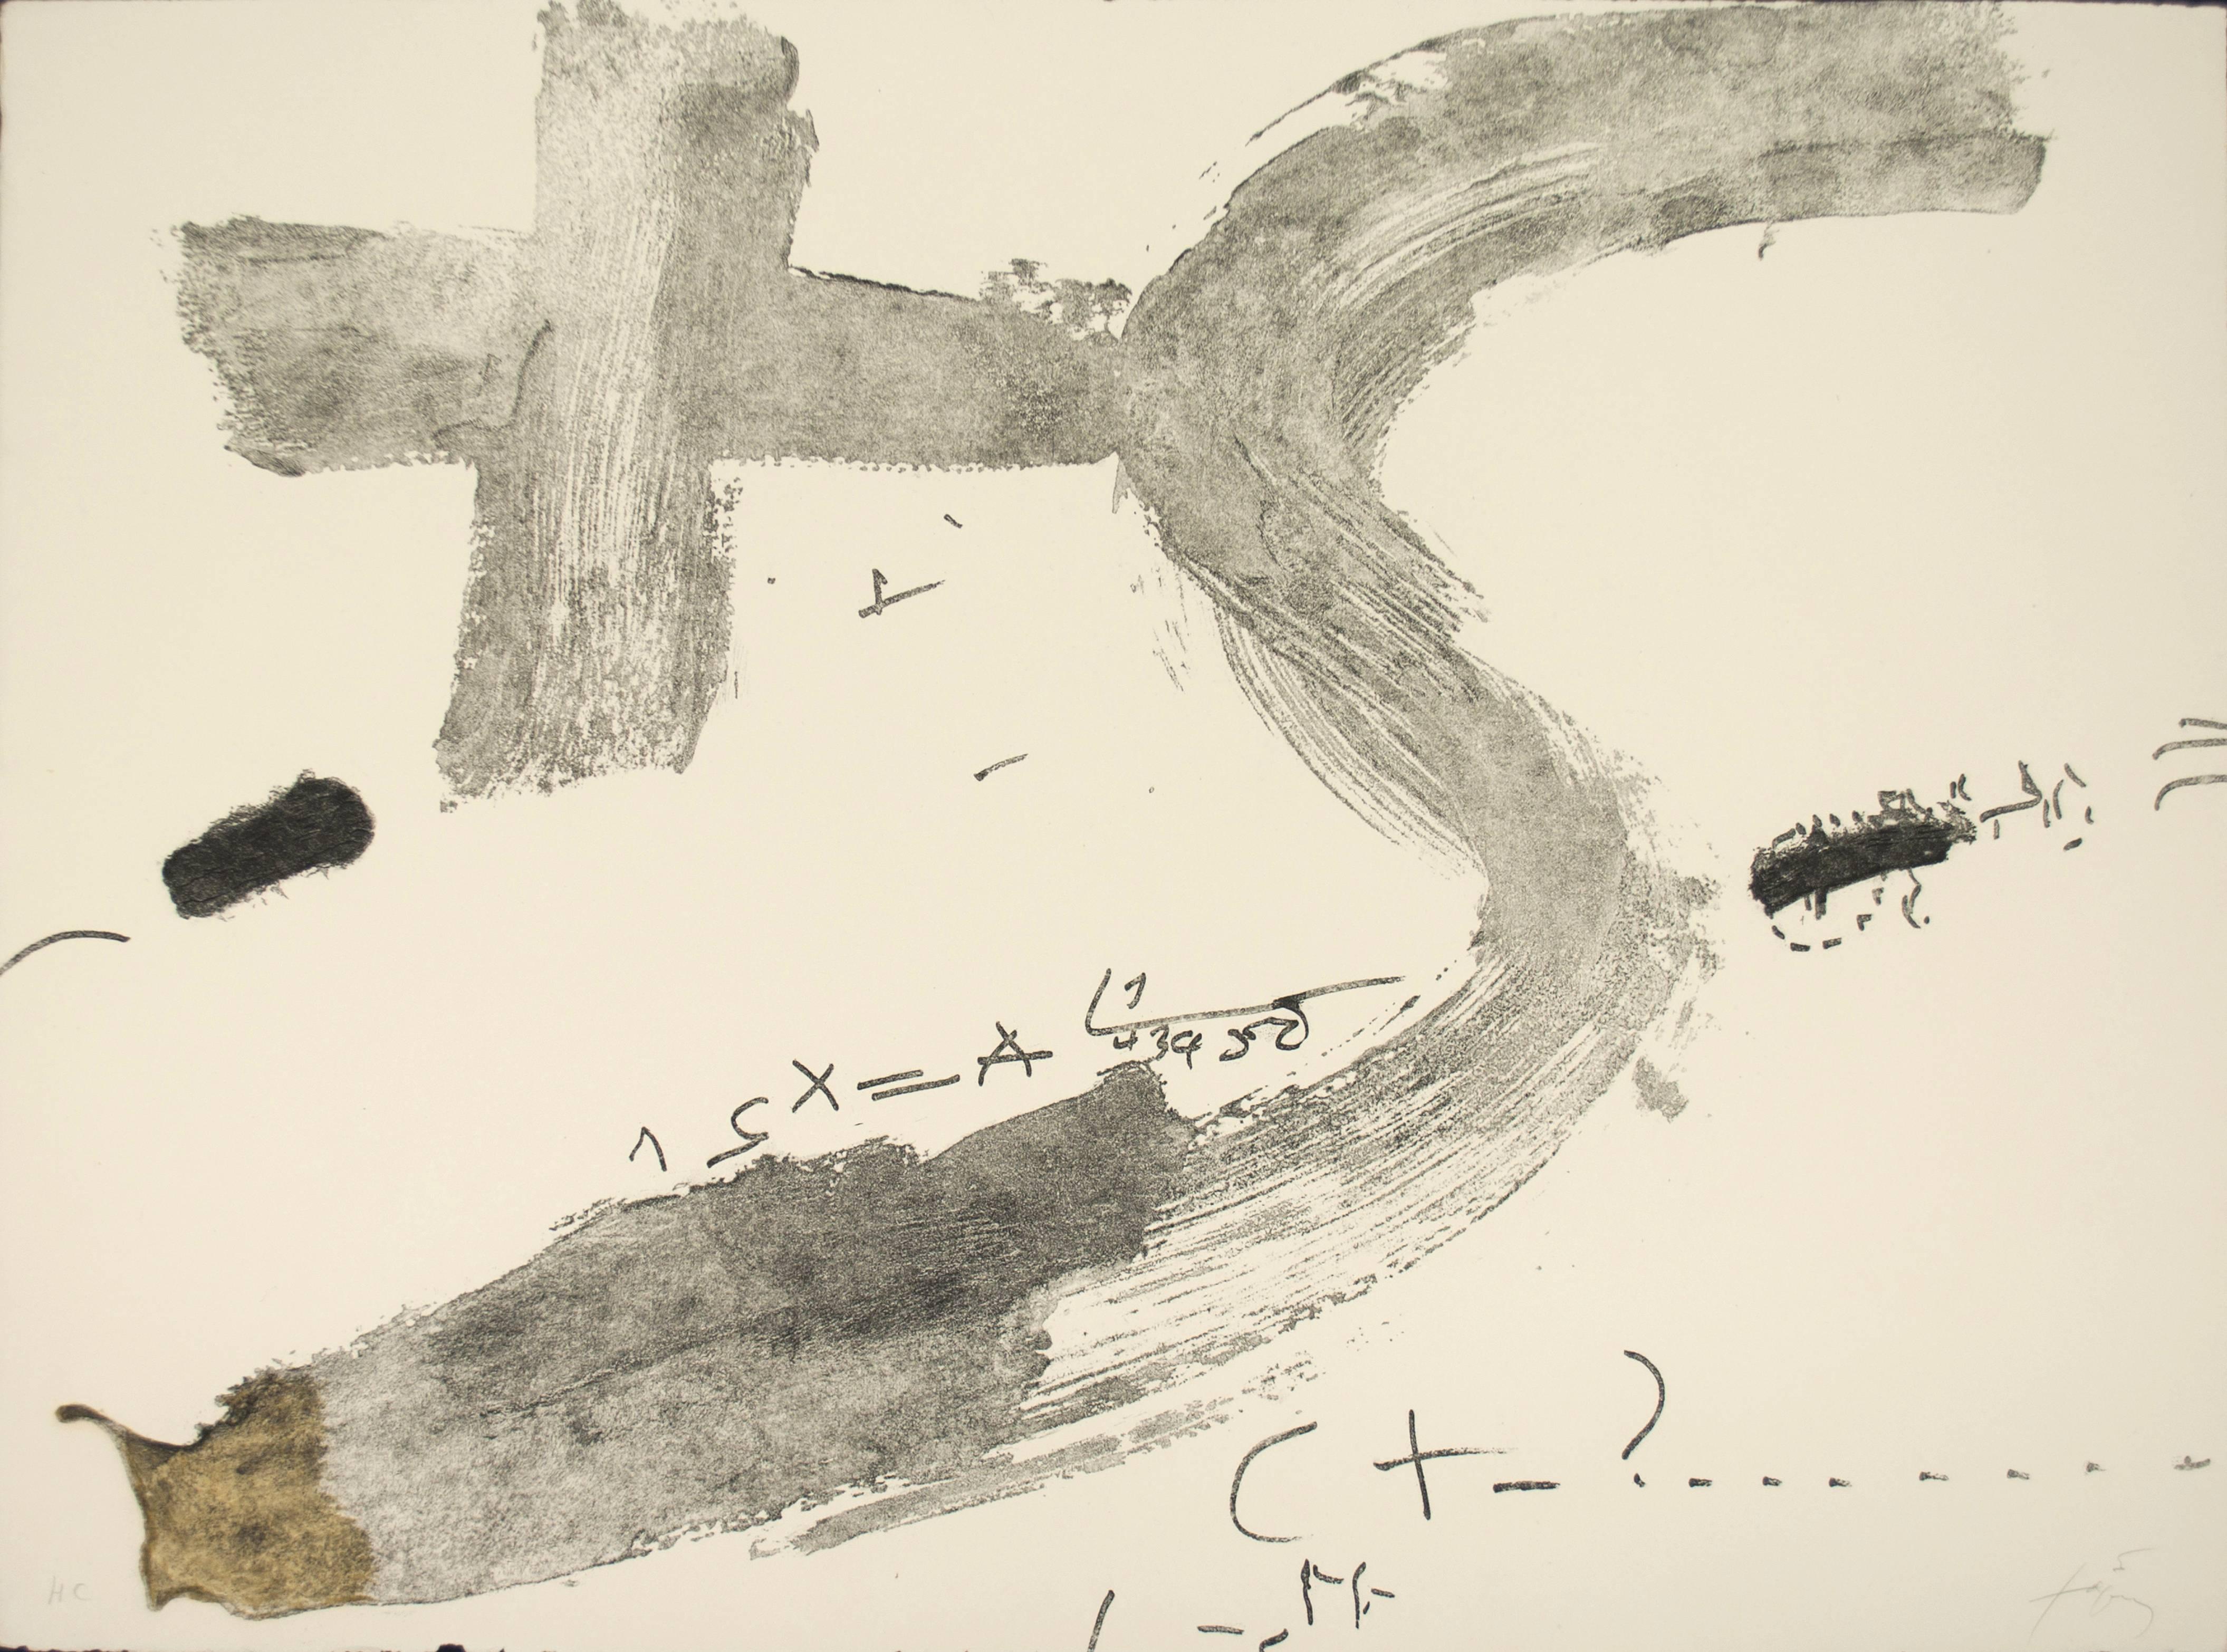 Creu i S - Print by Antoni Tàpies